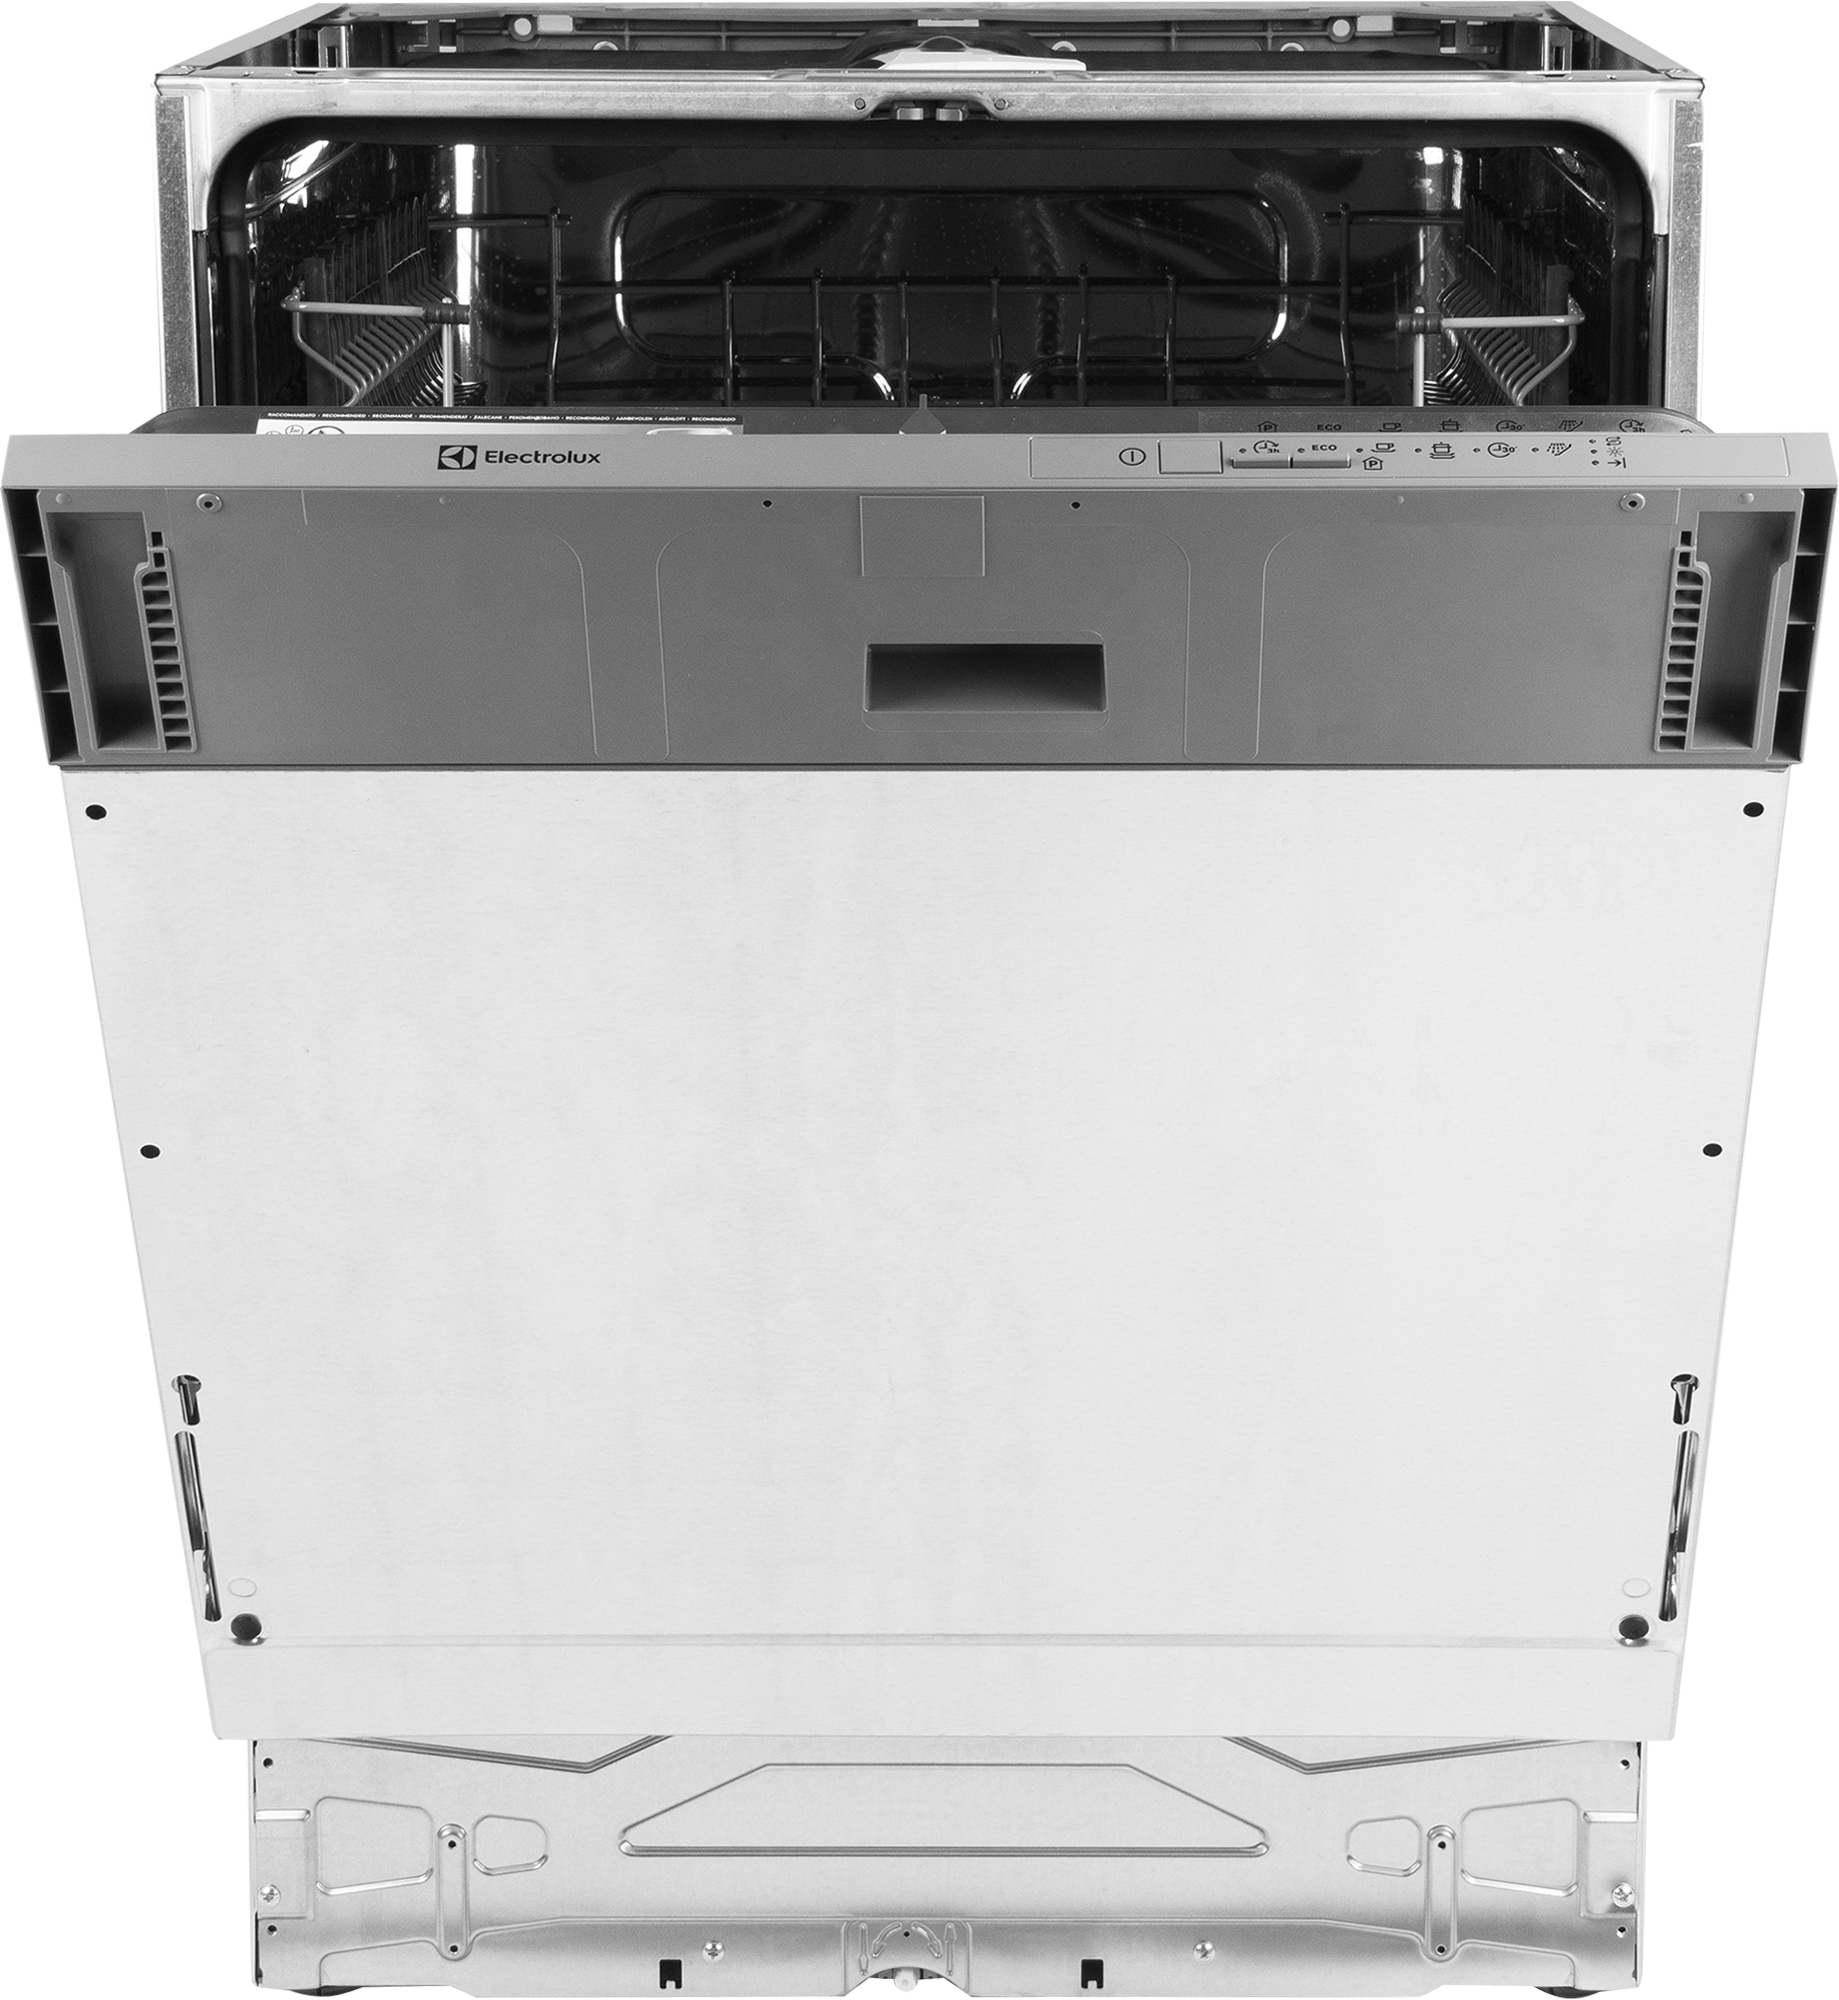 Посудомоечная машина Electrolux EEA 917100 L. Hansa zim608eh. Встраиваемая посудомоечная машина Hansa zim608eh. Электролюкс посудомоечная машина 60 встраиваемая. Посудомоечная электролюкс 60